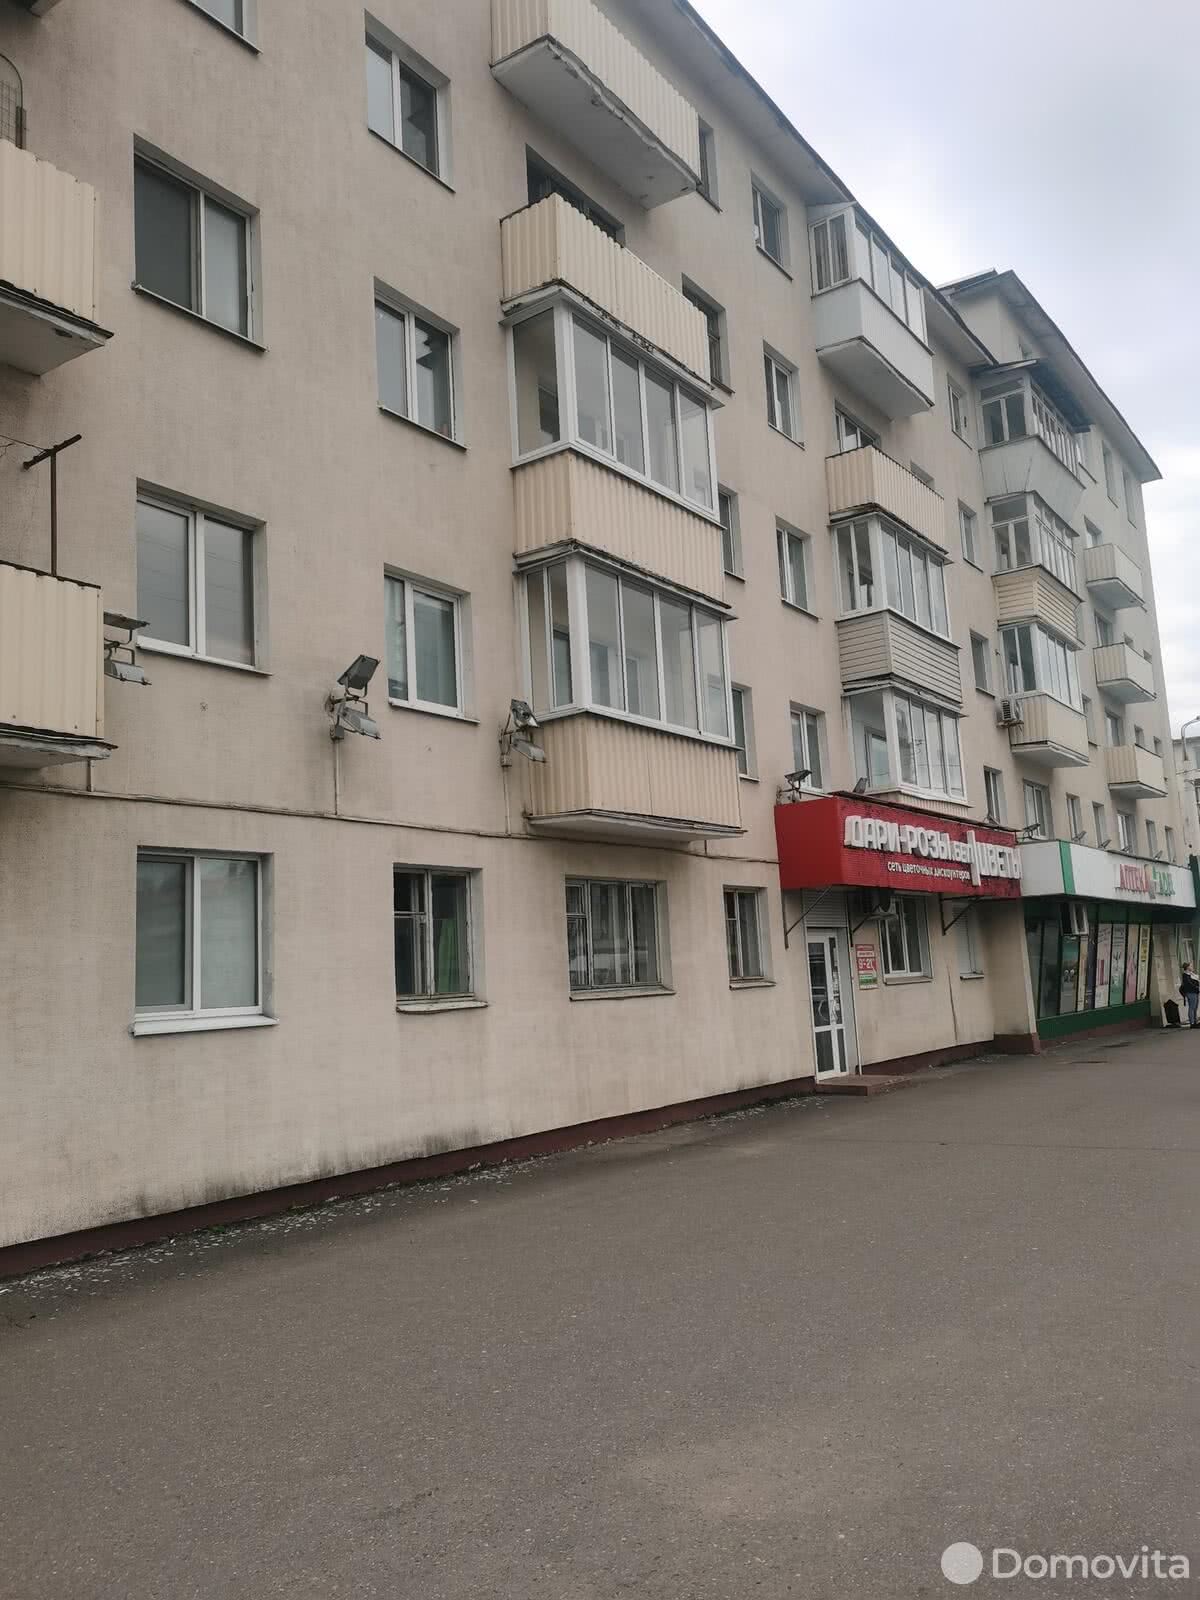 Цена продажи квартиры, Витебск, пр-т Фрунзе, д. 40